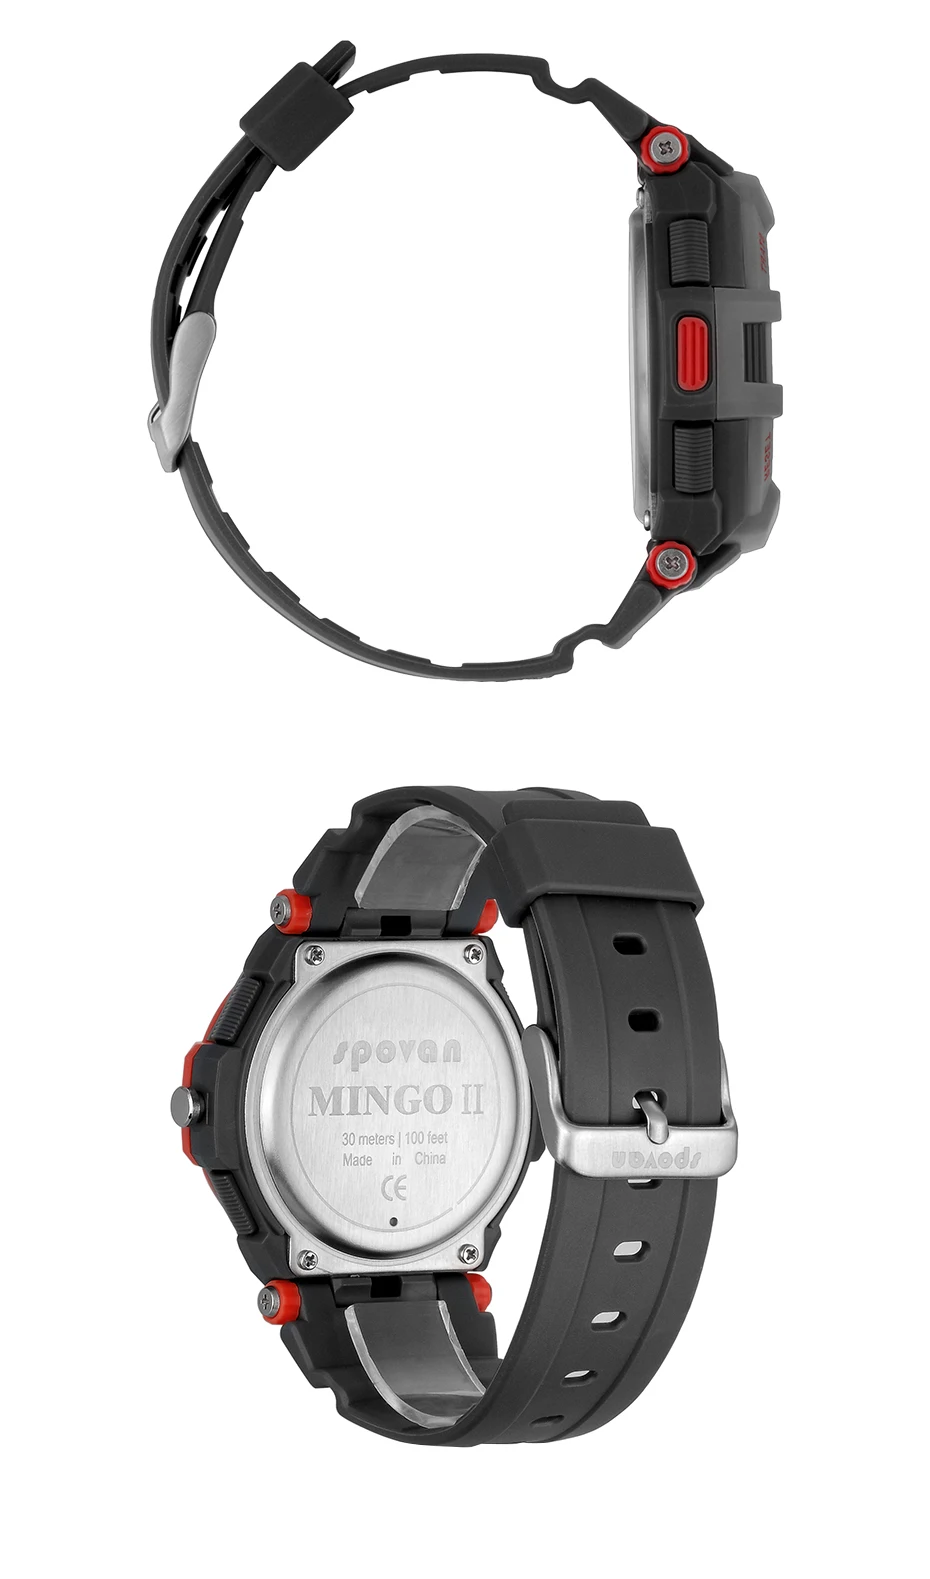 Relogio Digital Spovan Топ бренд Смарт спортивные часы для мужчин военные качественные наручные часы силиконовые Дата автоматические часы фитнес